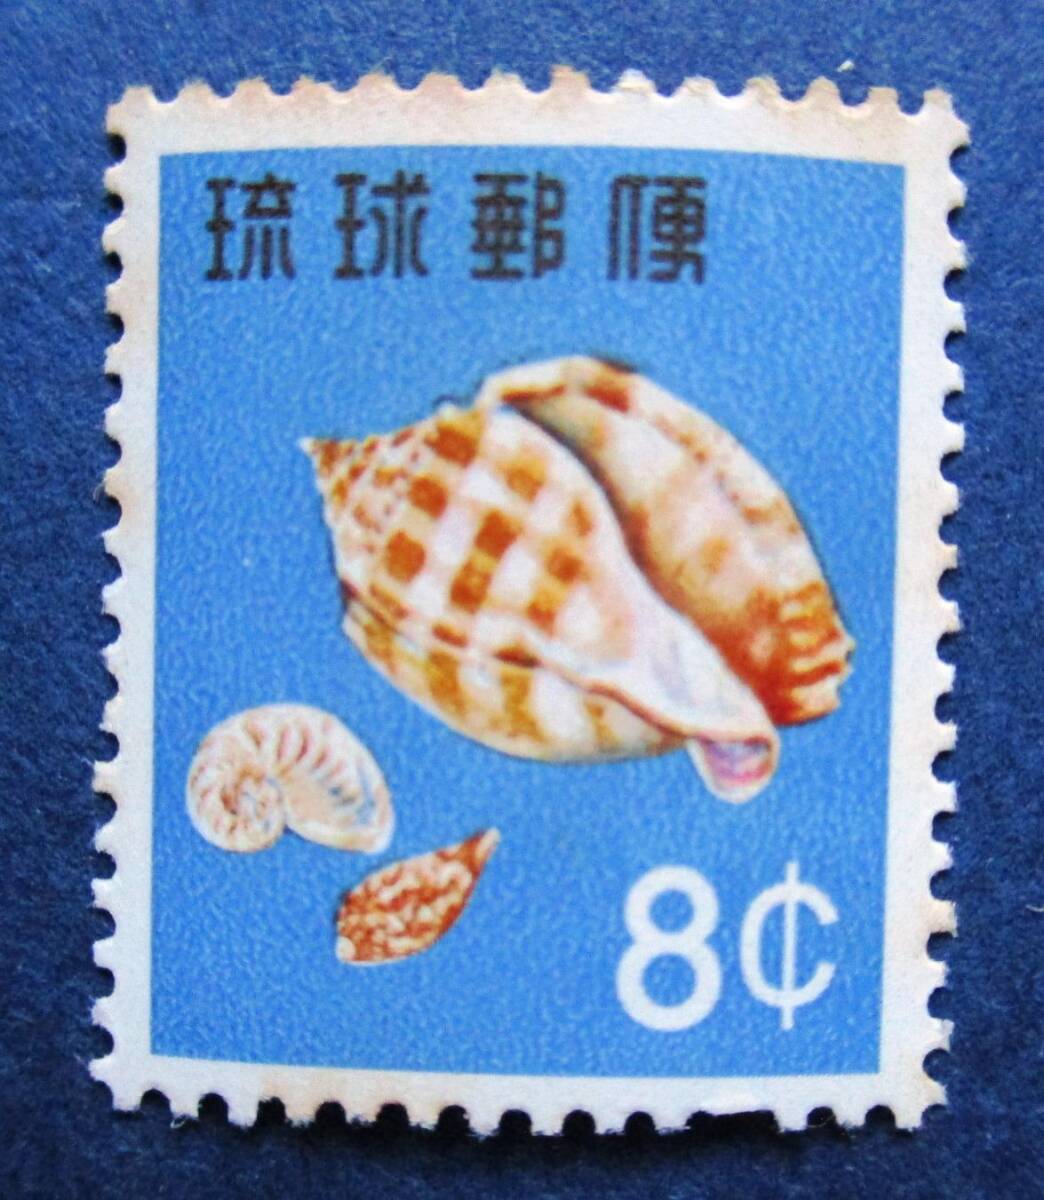 沖縄切手・琉球切手 第1次動植物シリーズ タイコガイ 8￠切手。 BB18 シミがあります。画像参照の画像3